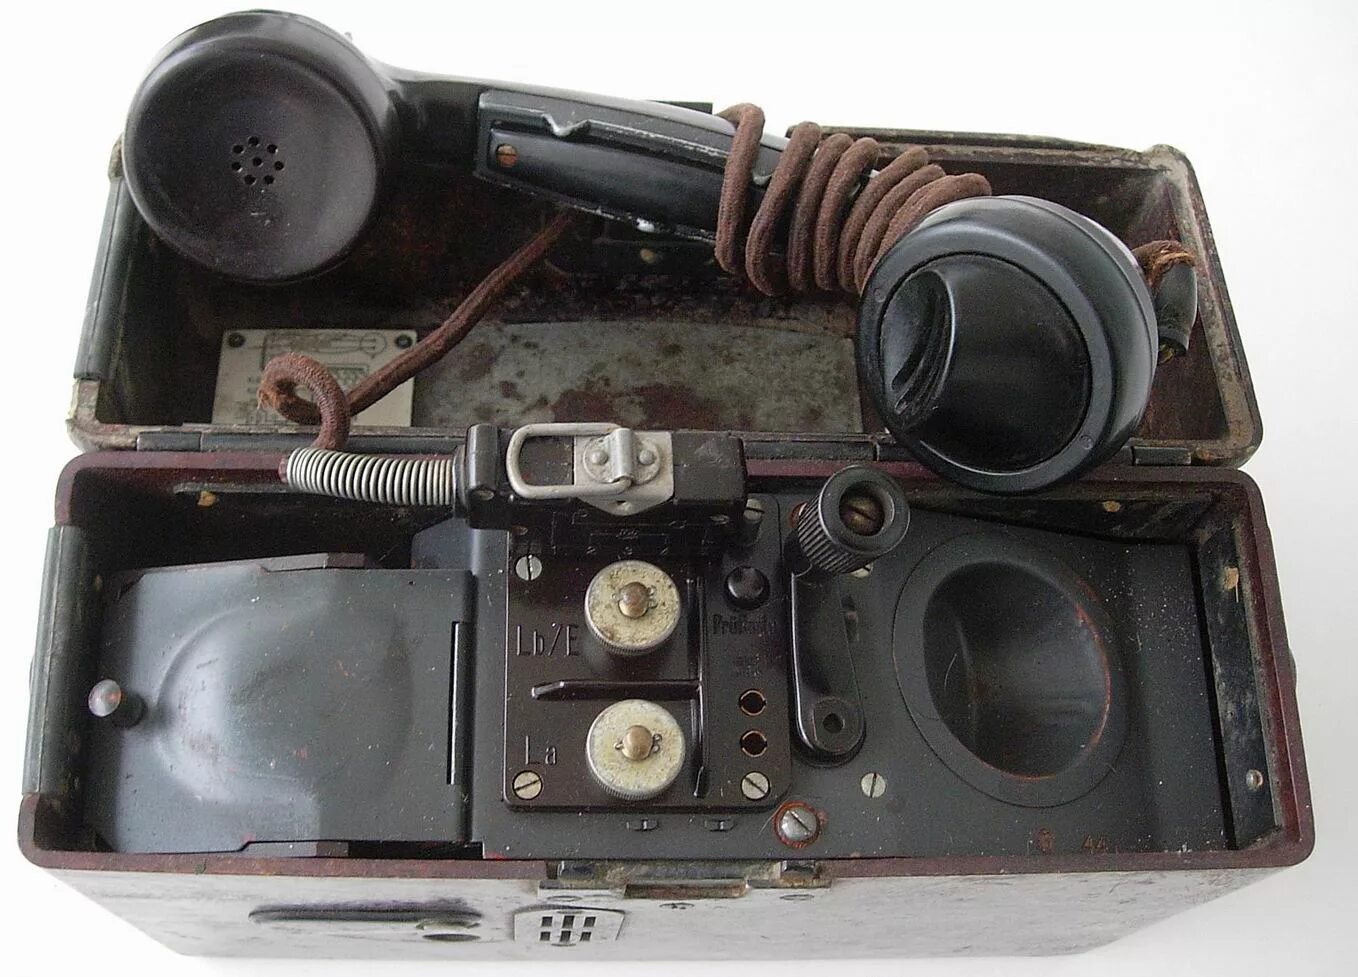 Немецкий полевой телефон FF-33. Швейцарский полевой телефон TF-53. Та-88 аппарат телефонный полевой.